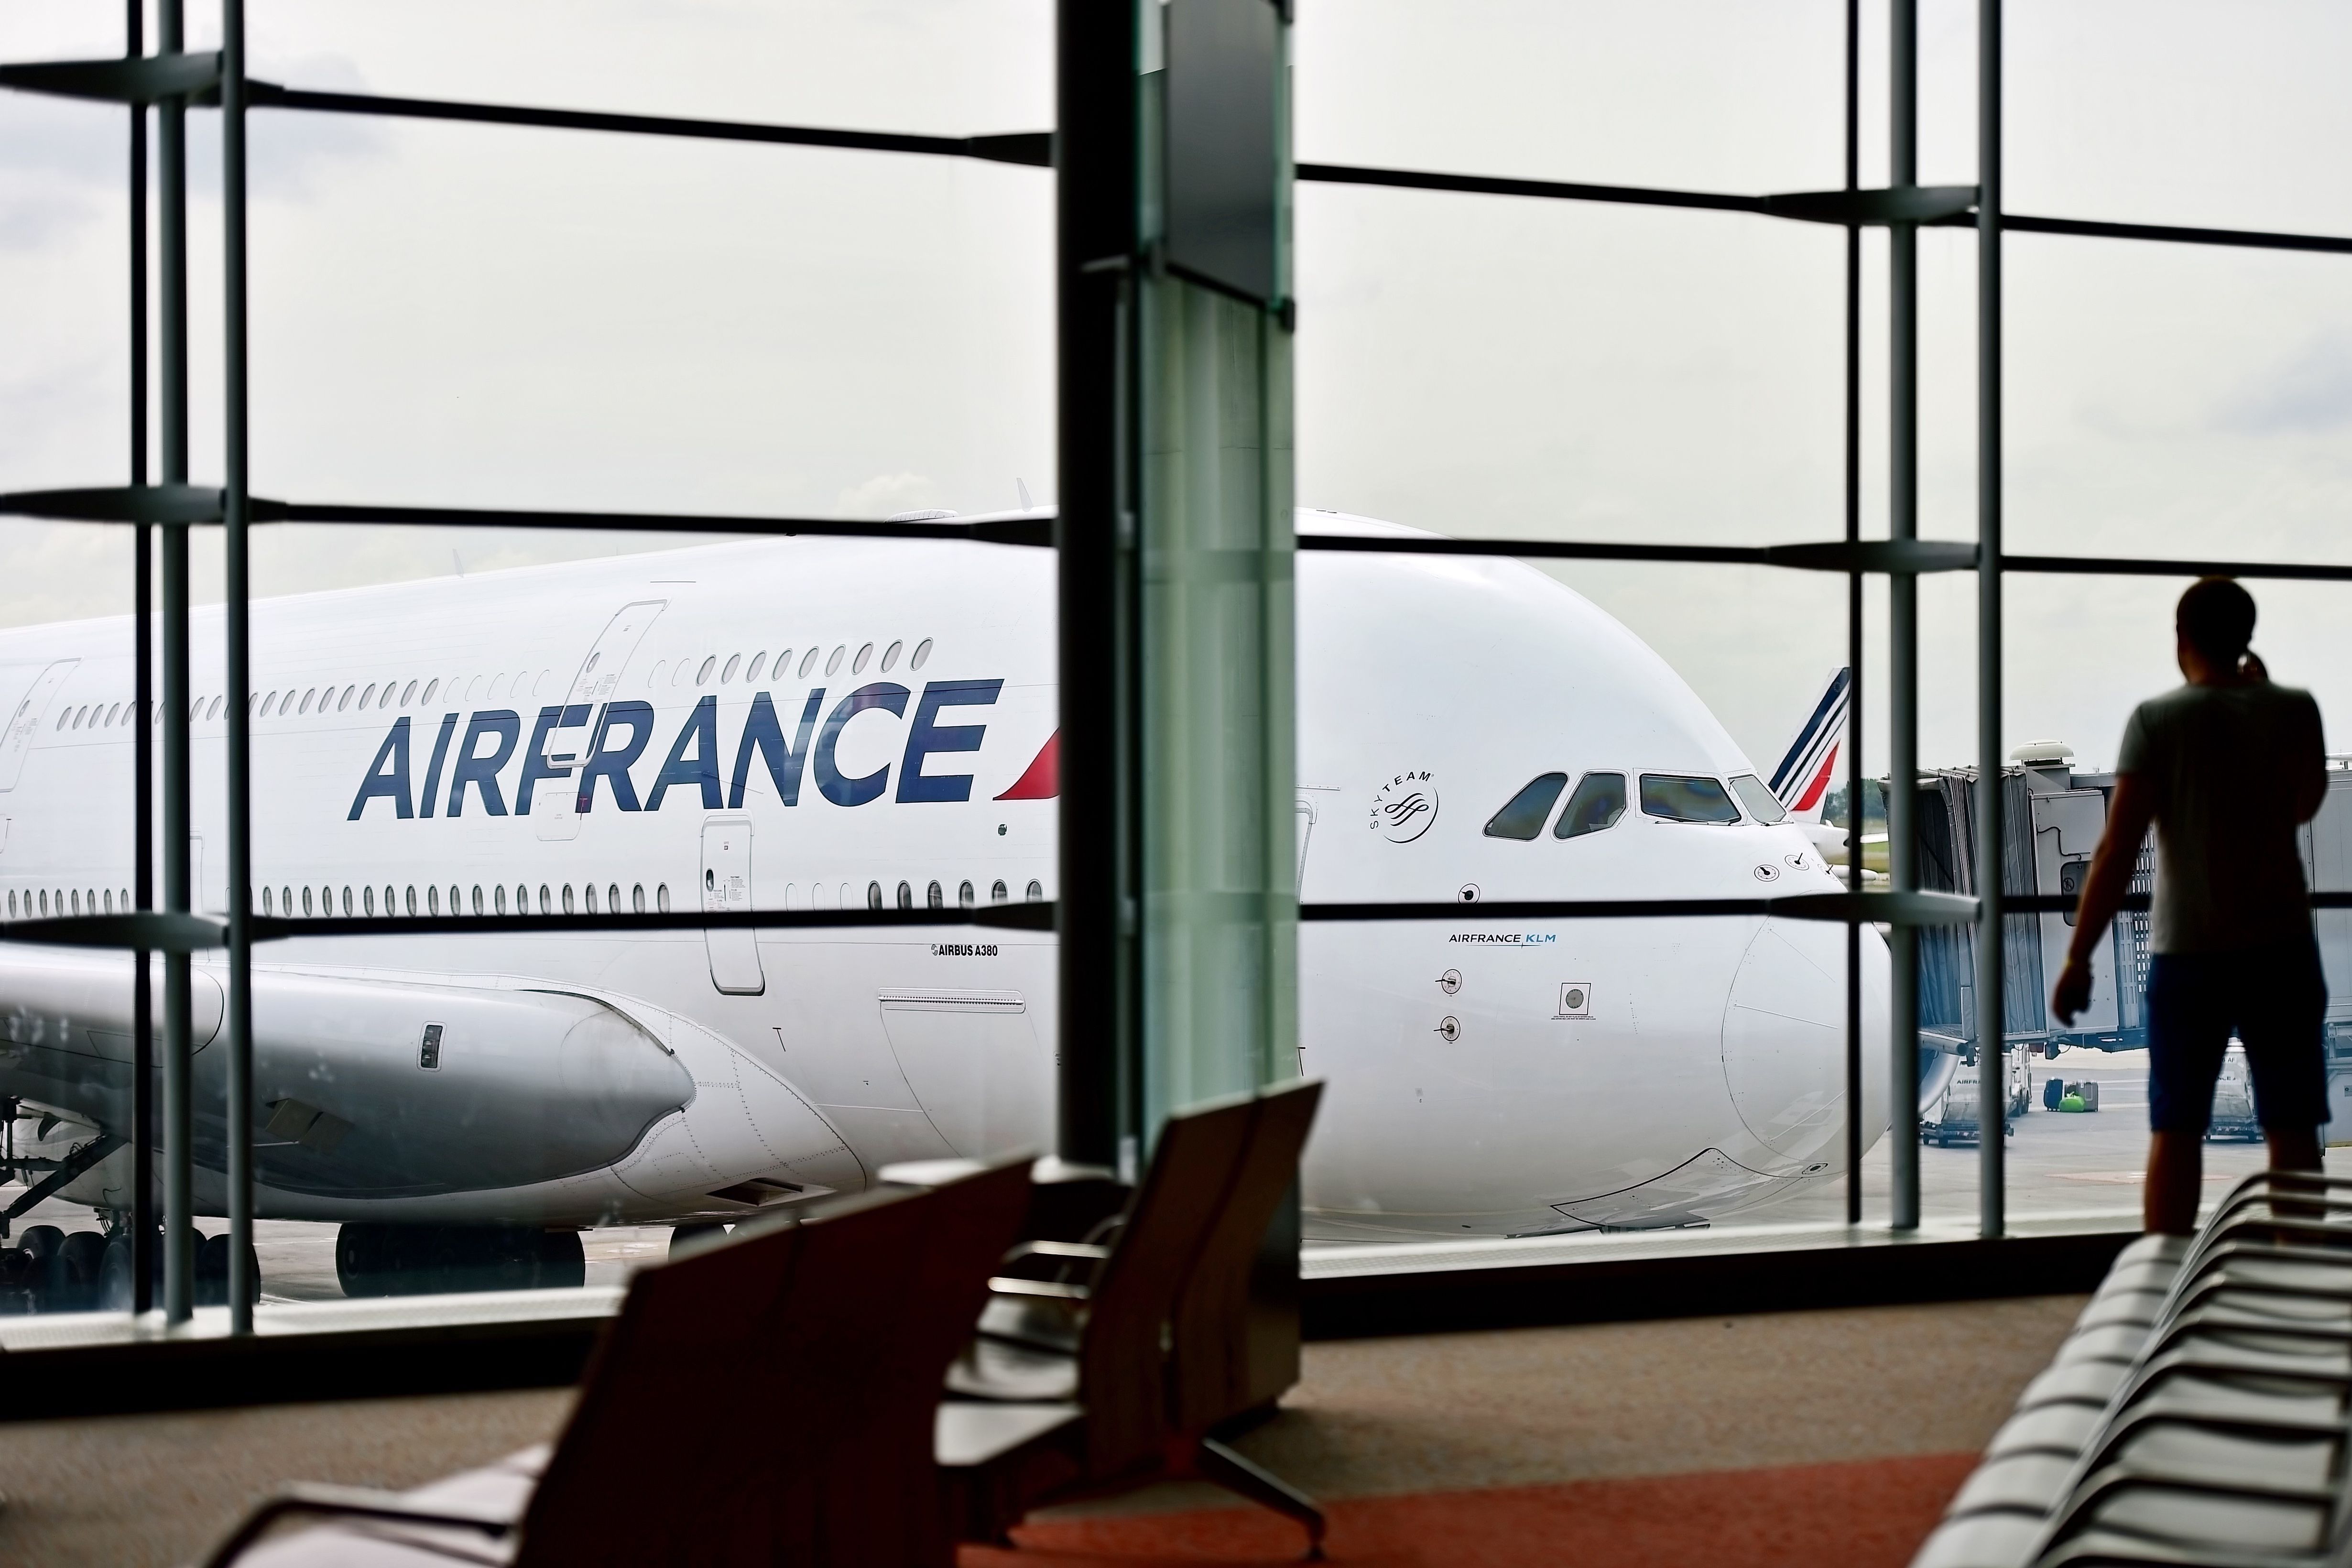 Air France A380 at gate